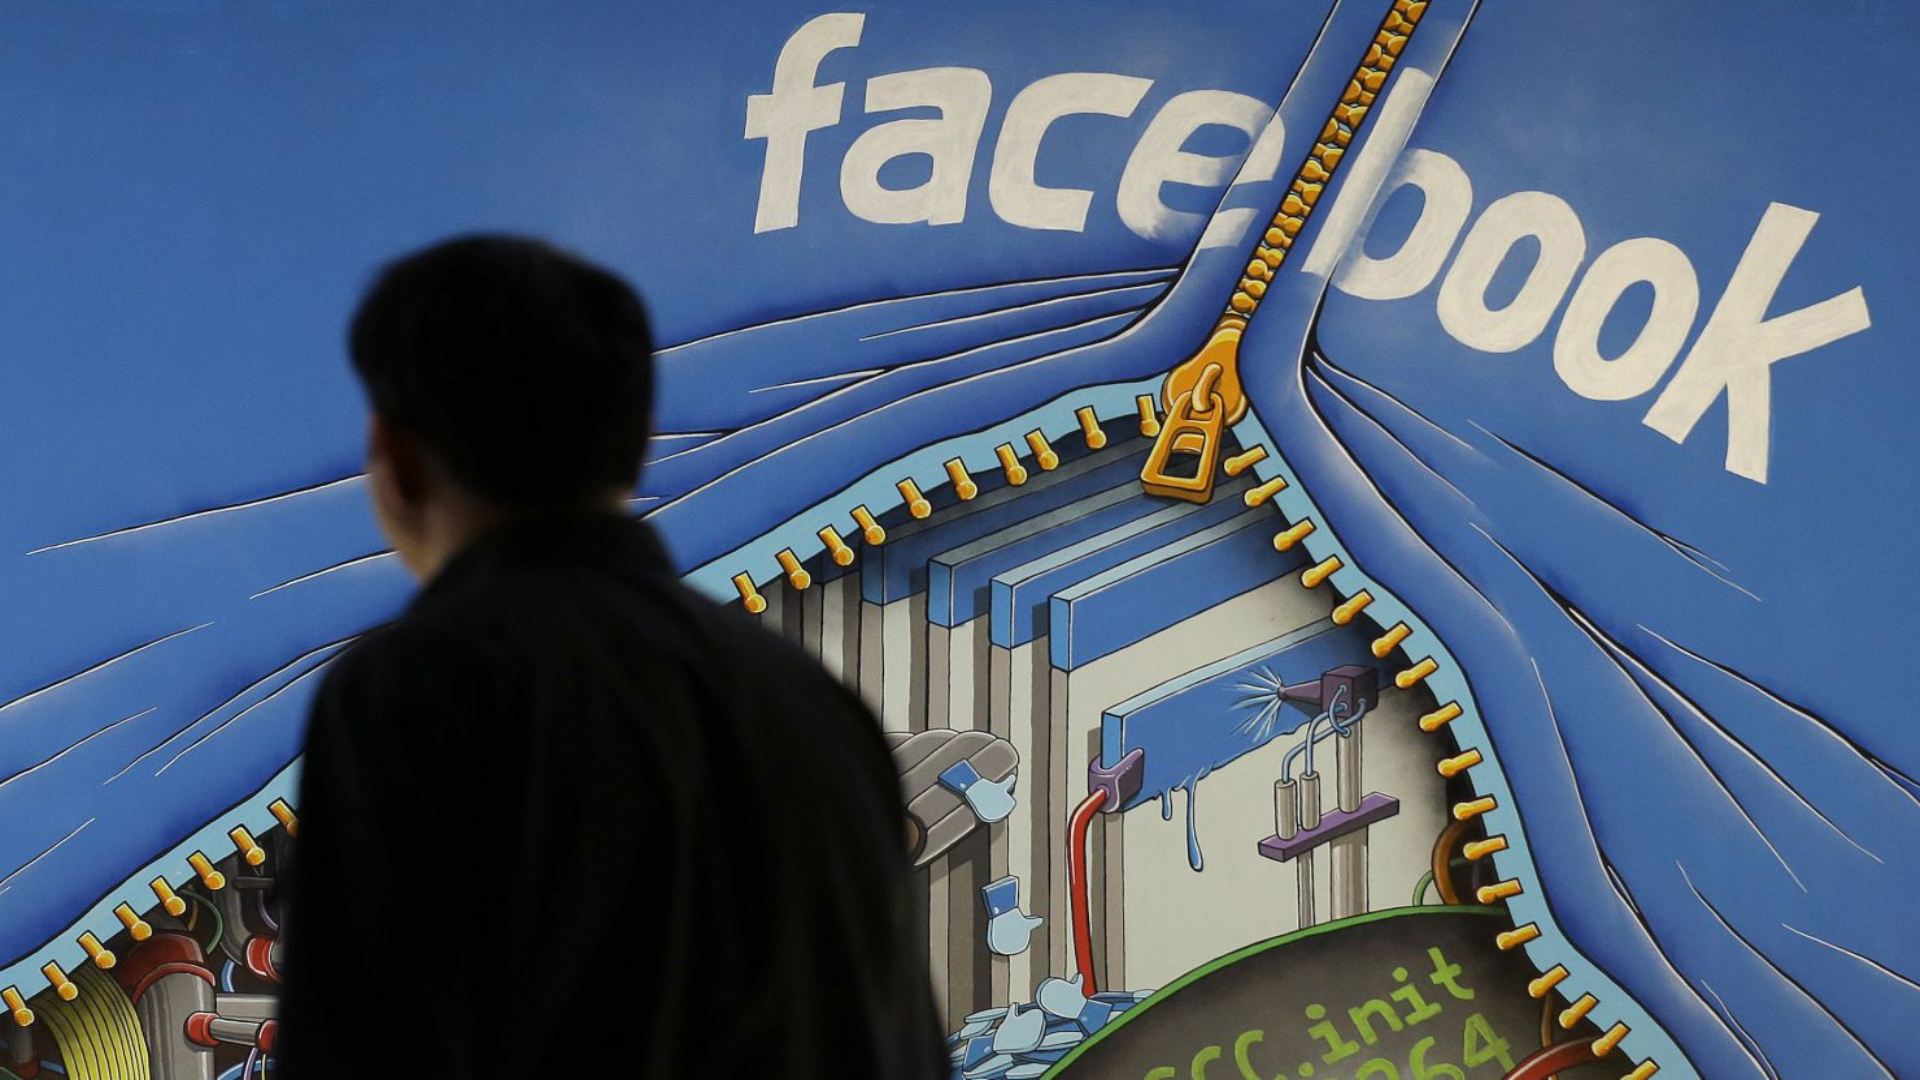 Will Facebook’s ‘Fake News’ Filter Result In Mass Censorship? | Facebook